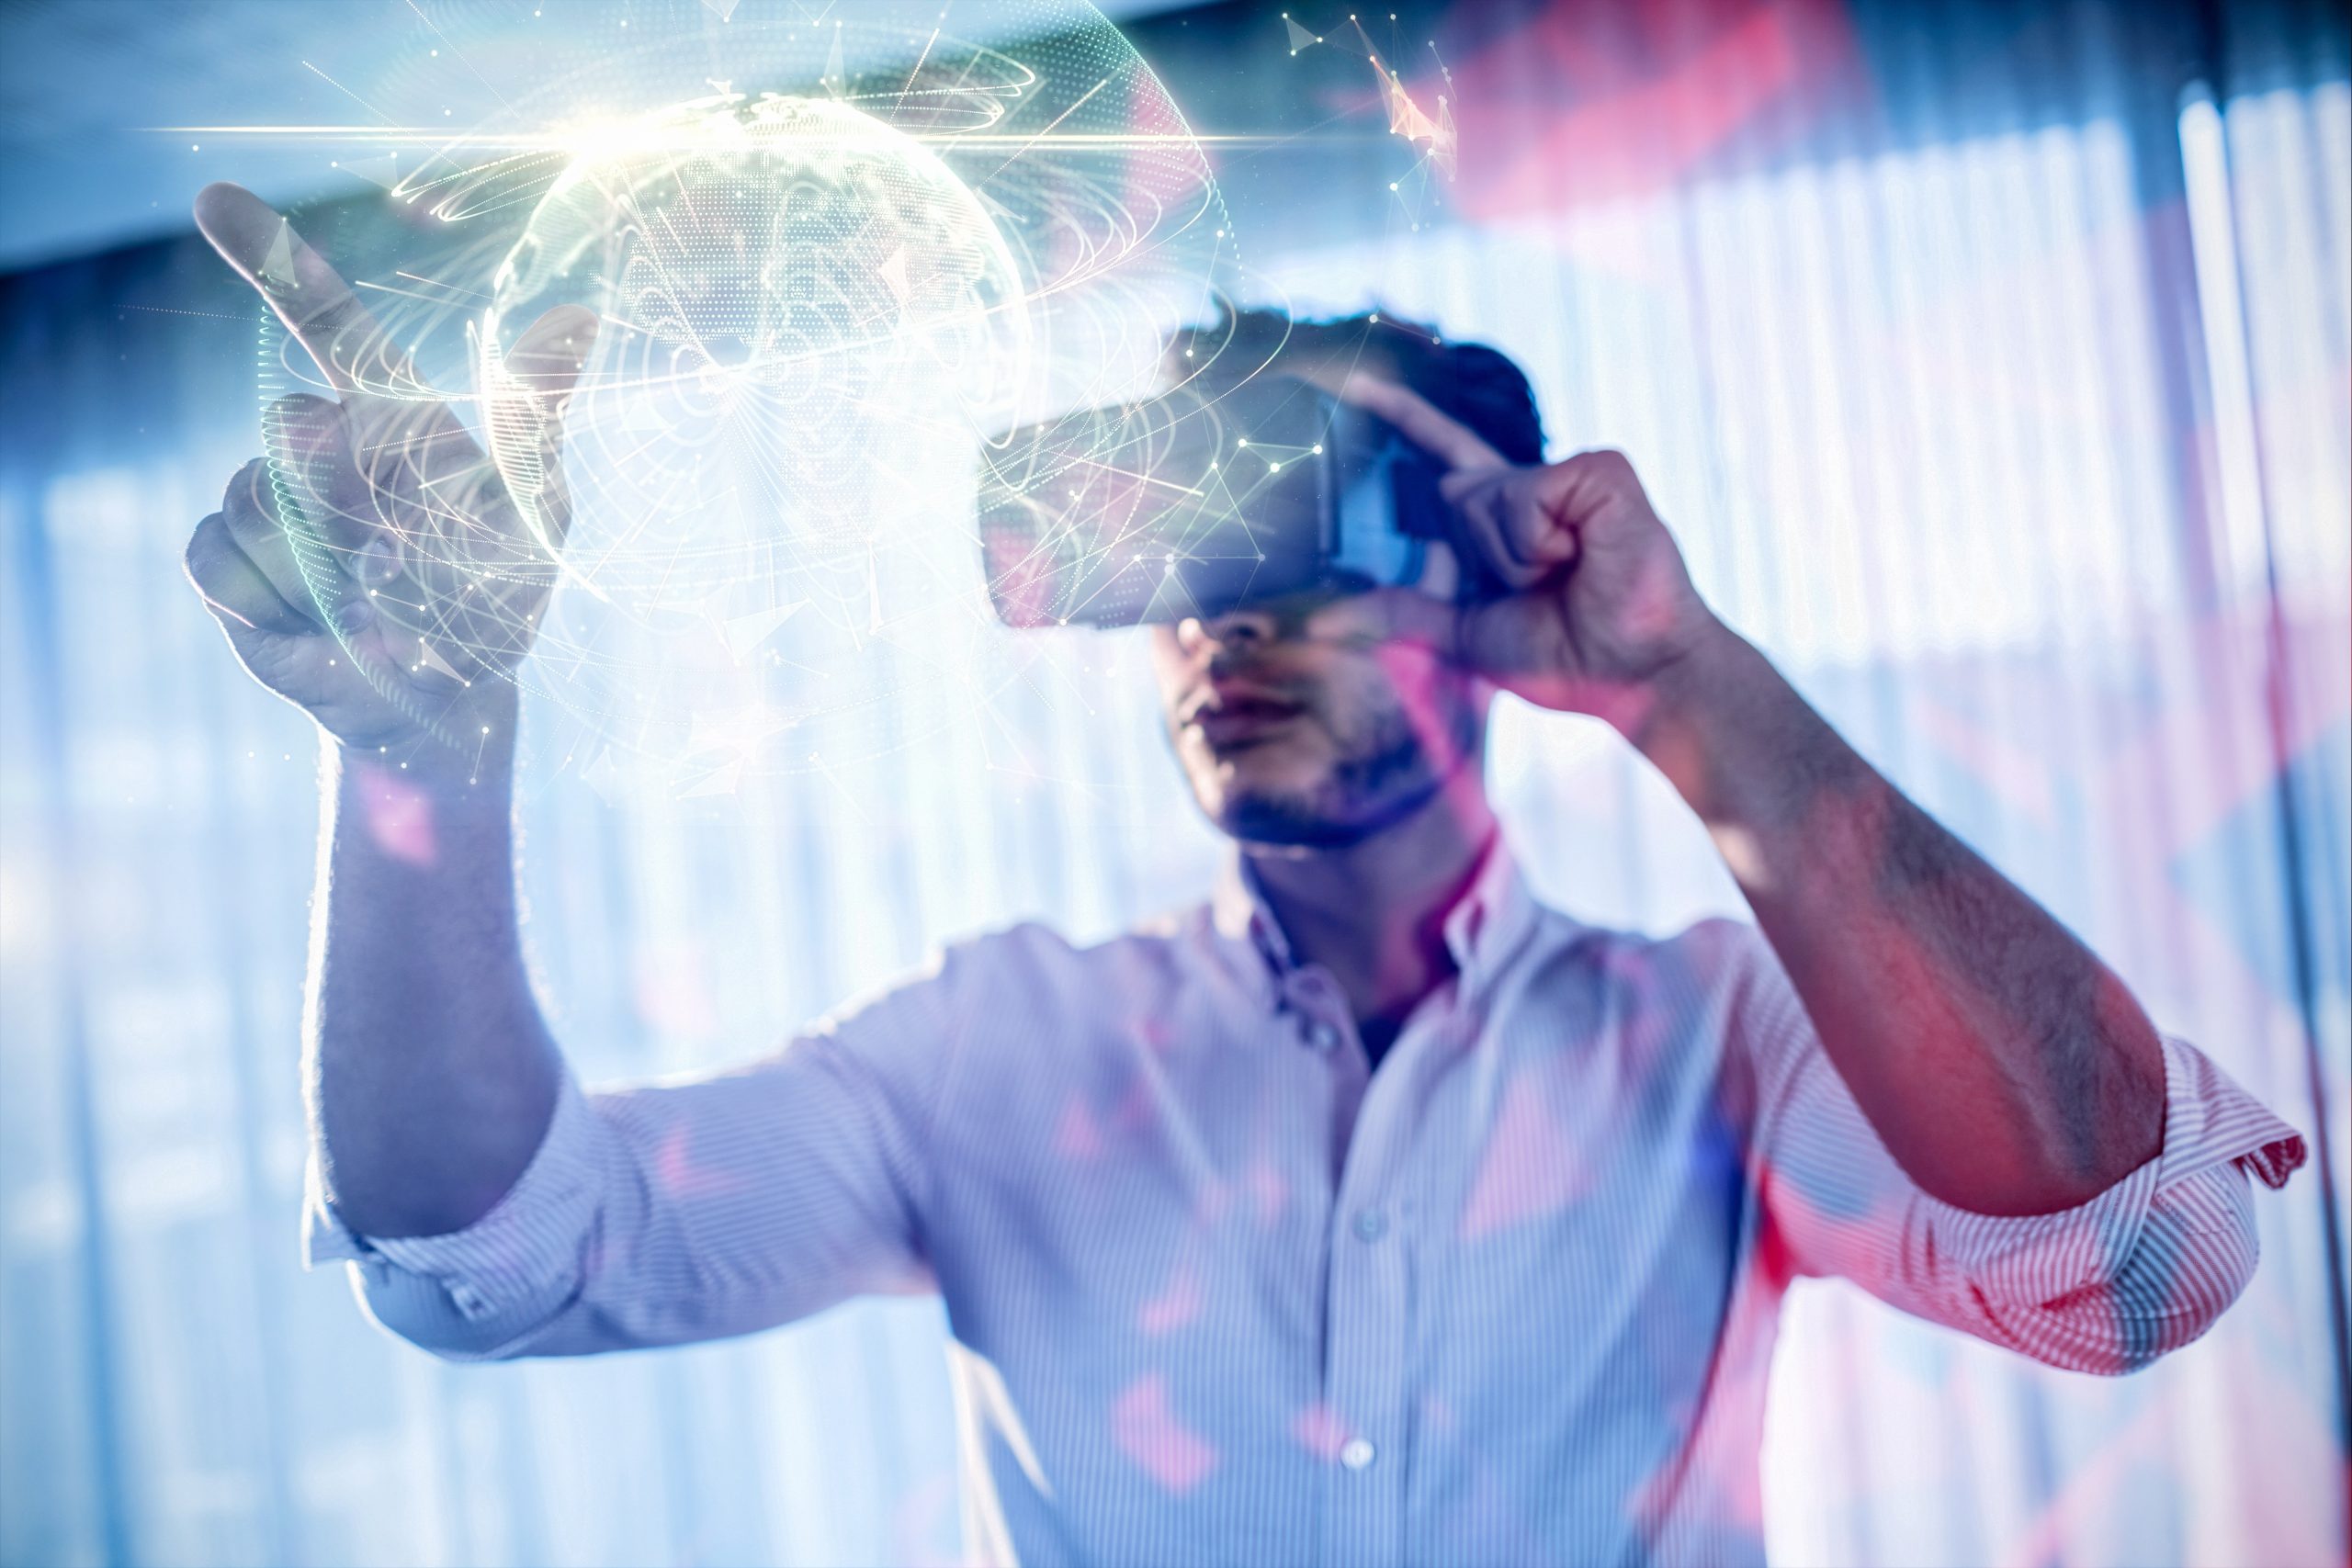 Мечта в игре становится реальностью 45. Технологии виртуальной реальности. Мир виртуальной реальности. Интерактивная виртуальная реальность. Человек в виртуальной реальности.